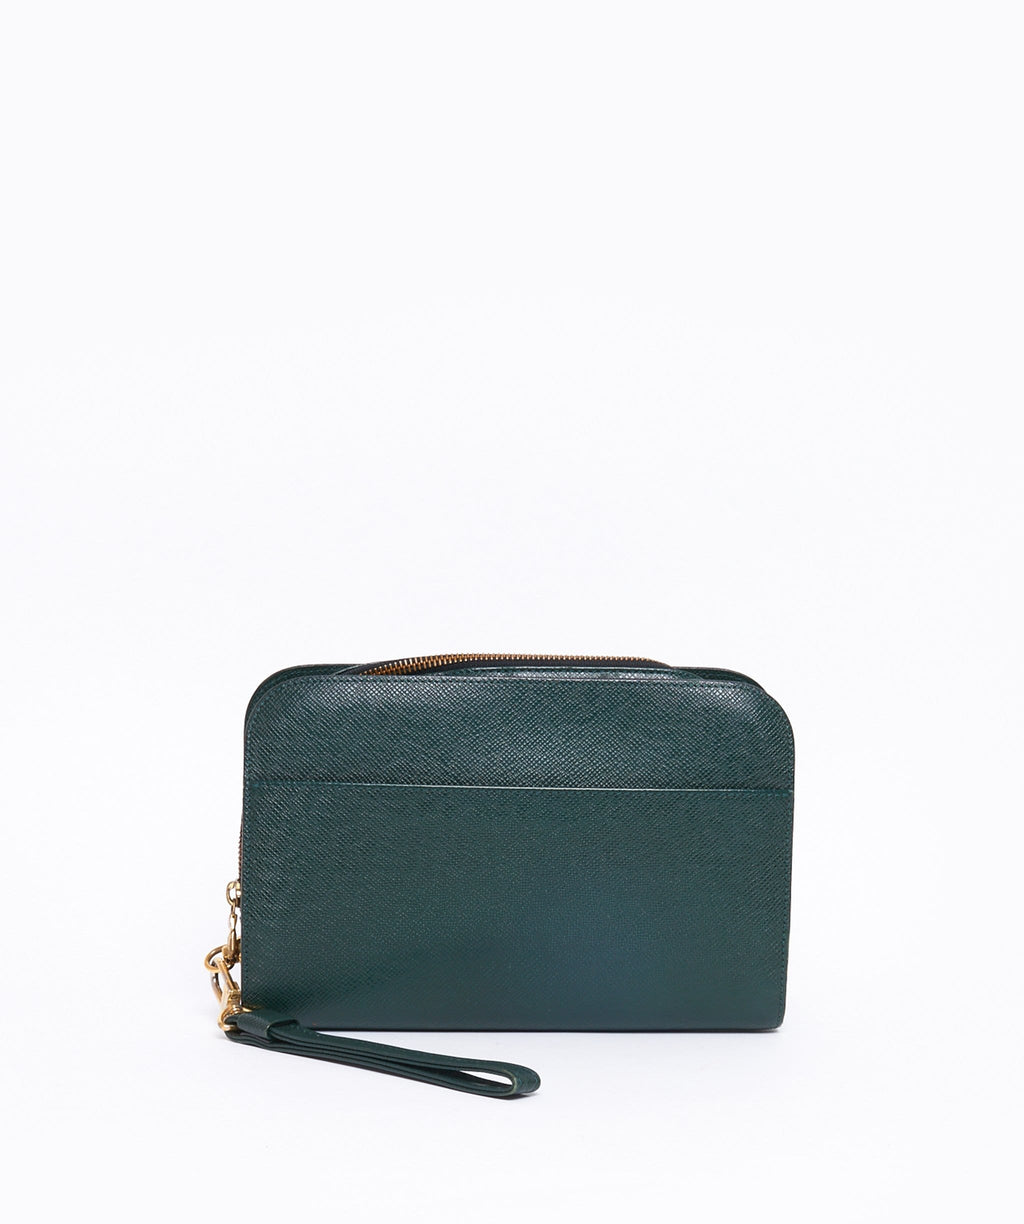 Louis Vuitton Taiga Baikal Leather Dark Green Clutch bag 763